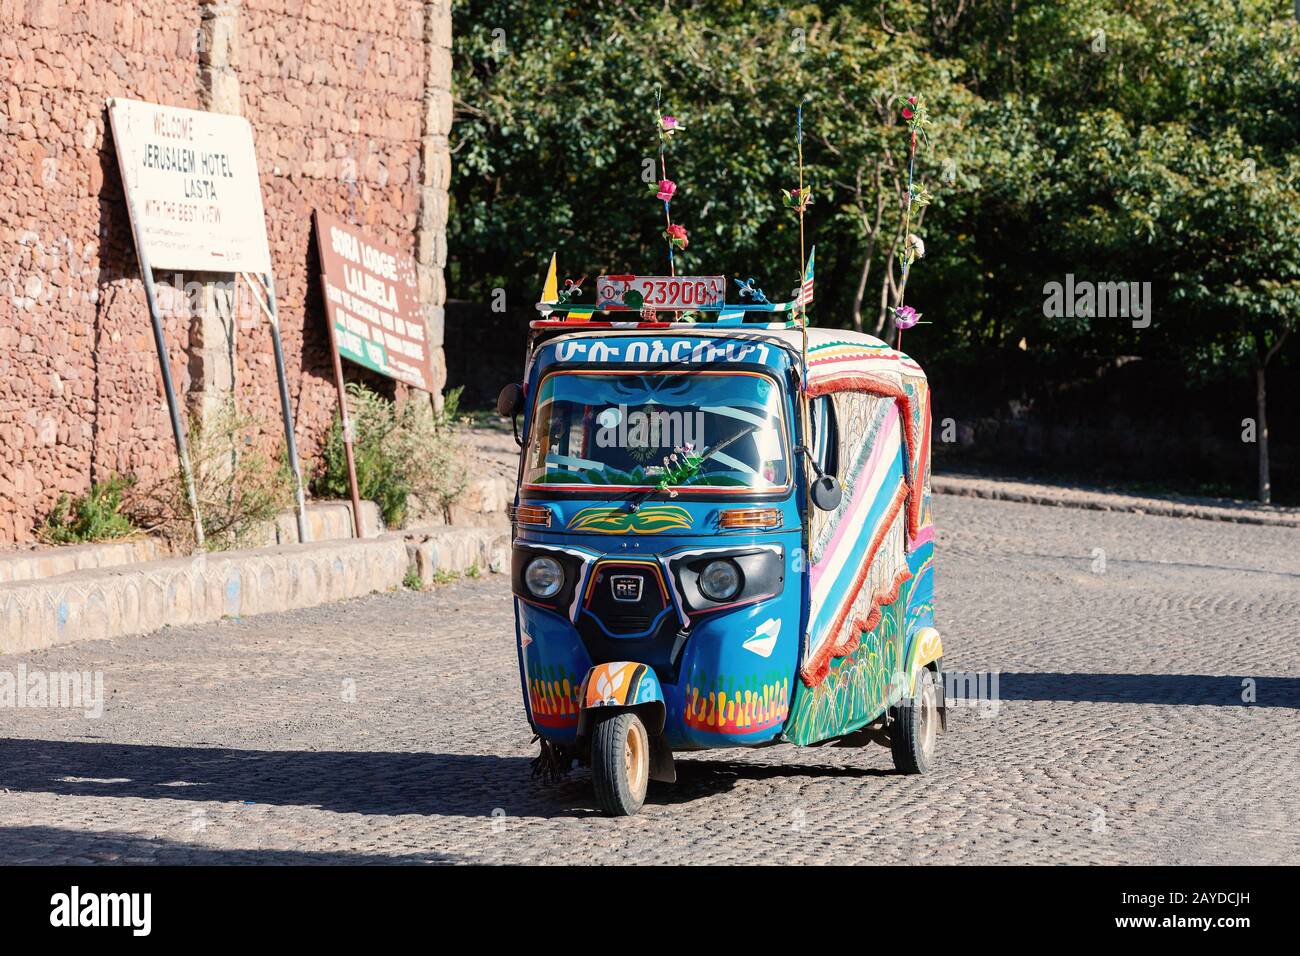 blue color auto rickshaw known as Tuk tuk, Ethiopia Stock Photo